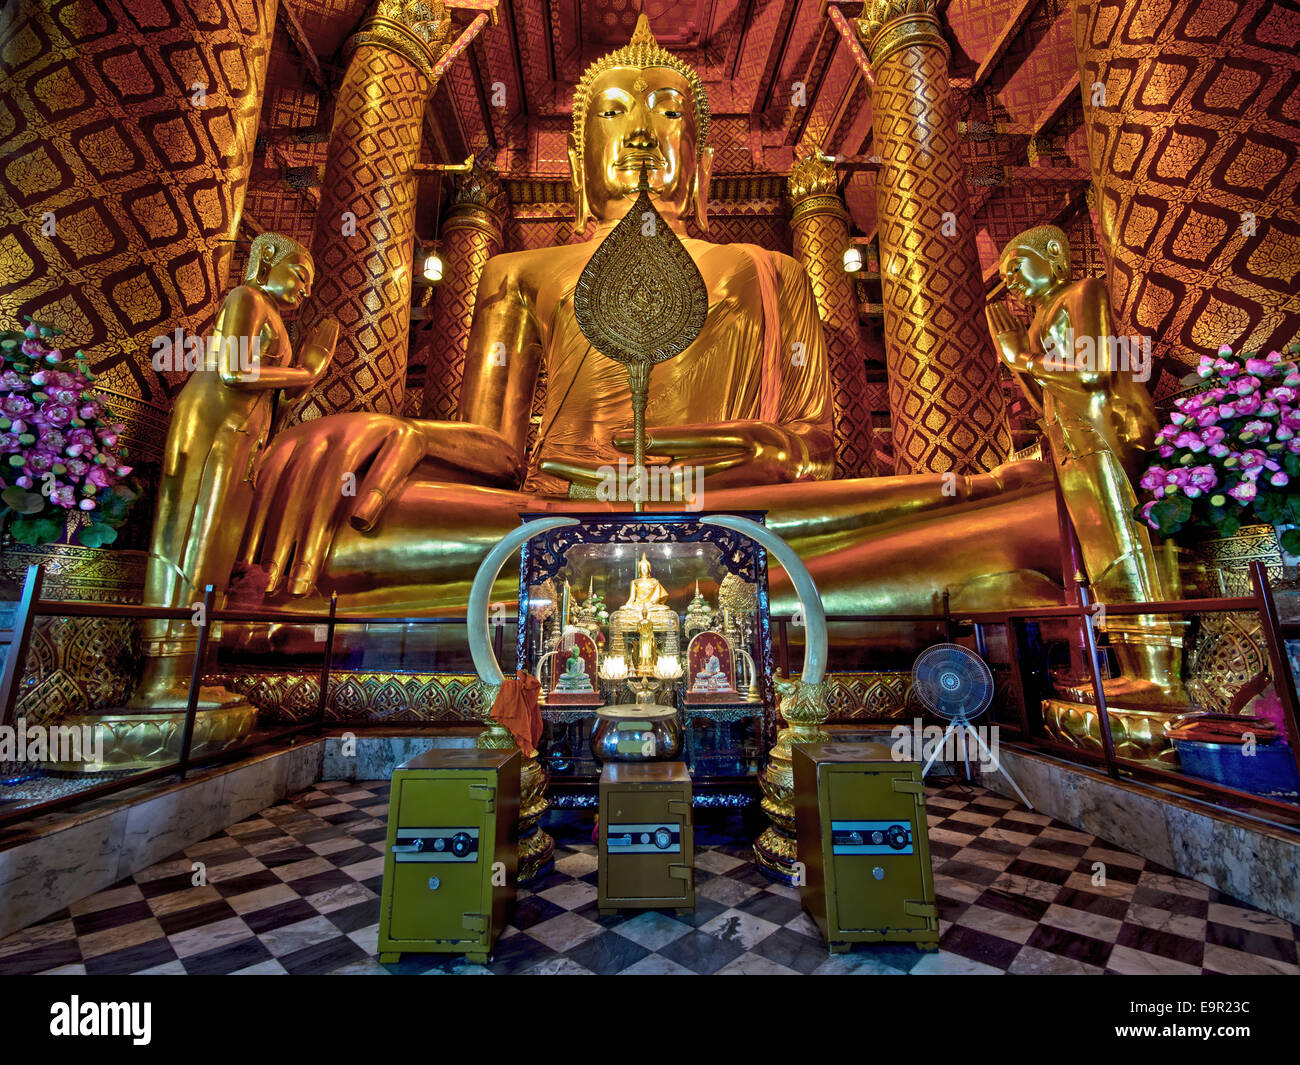 Le 14e siècle statue de Bouddha du Wat Phanan Choeng temple d'Ayutthaya, l'ancienne capitale de la Thaïlande. Banque D'Images